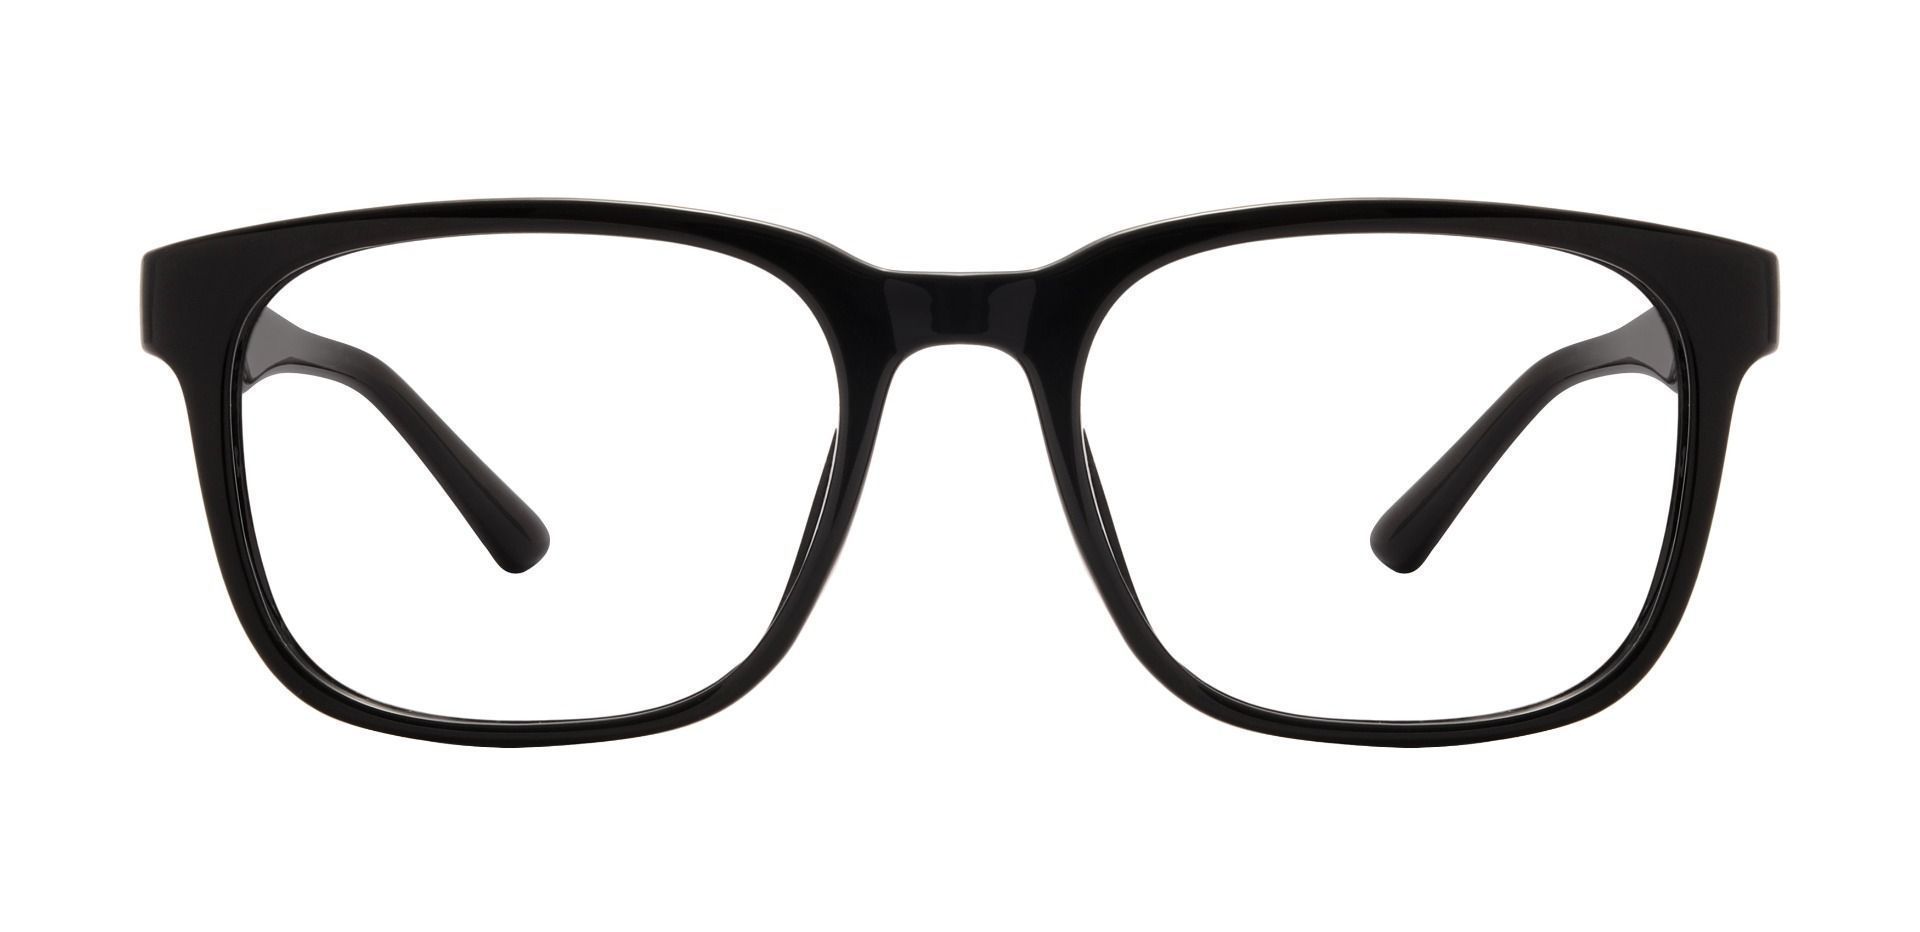 Forum Square Prescription Glasses - Black